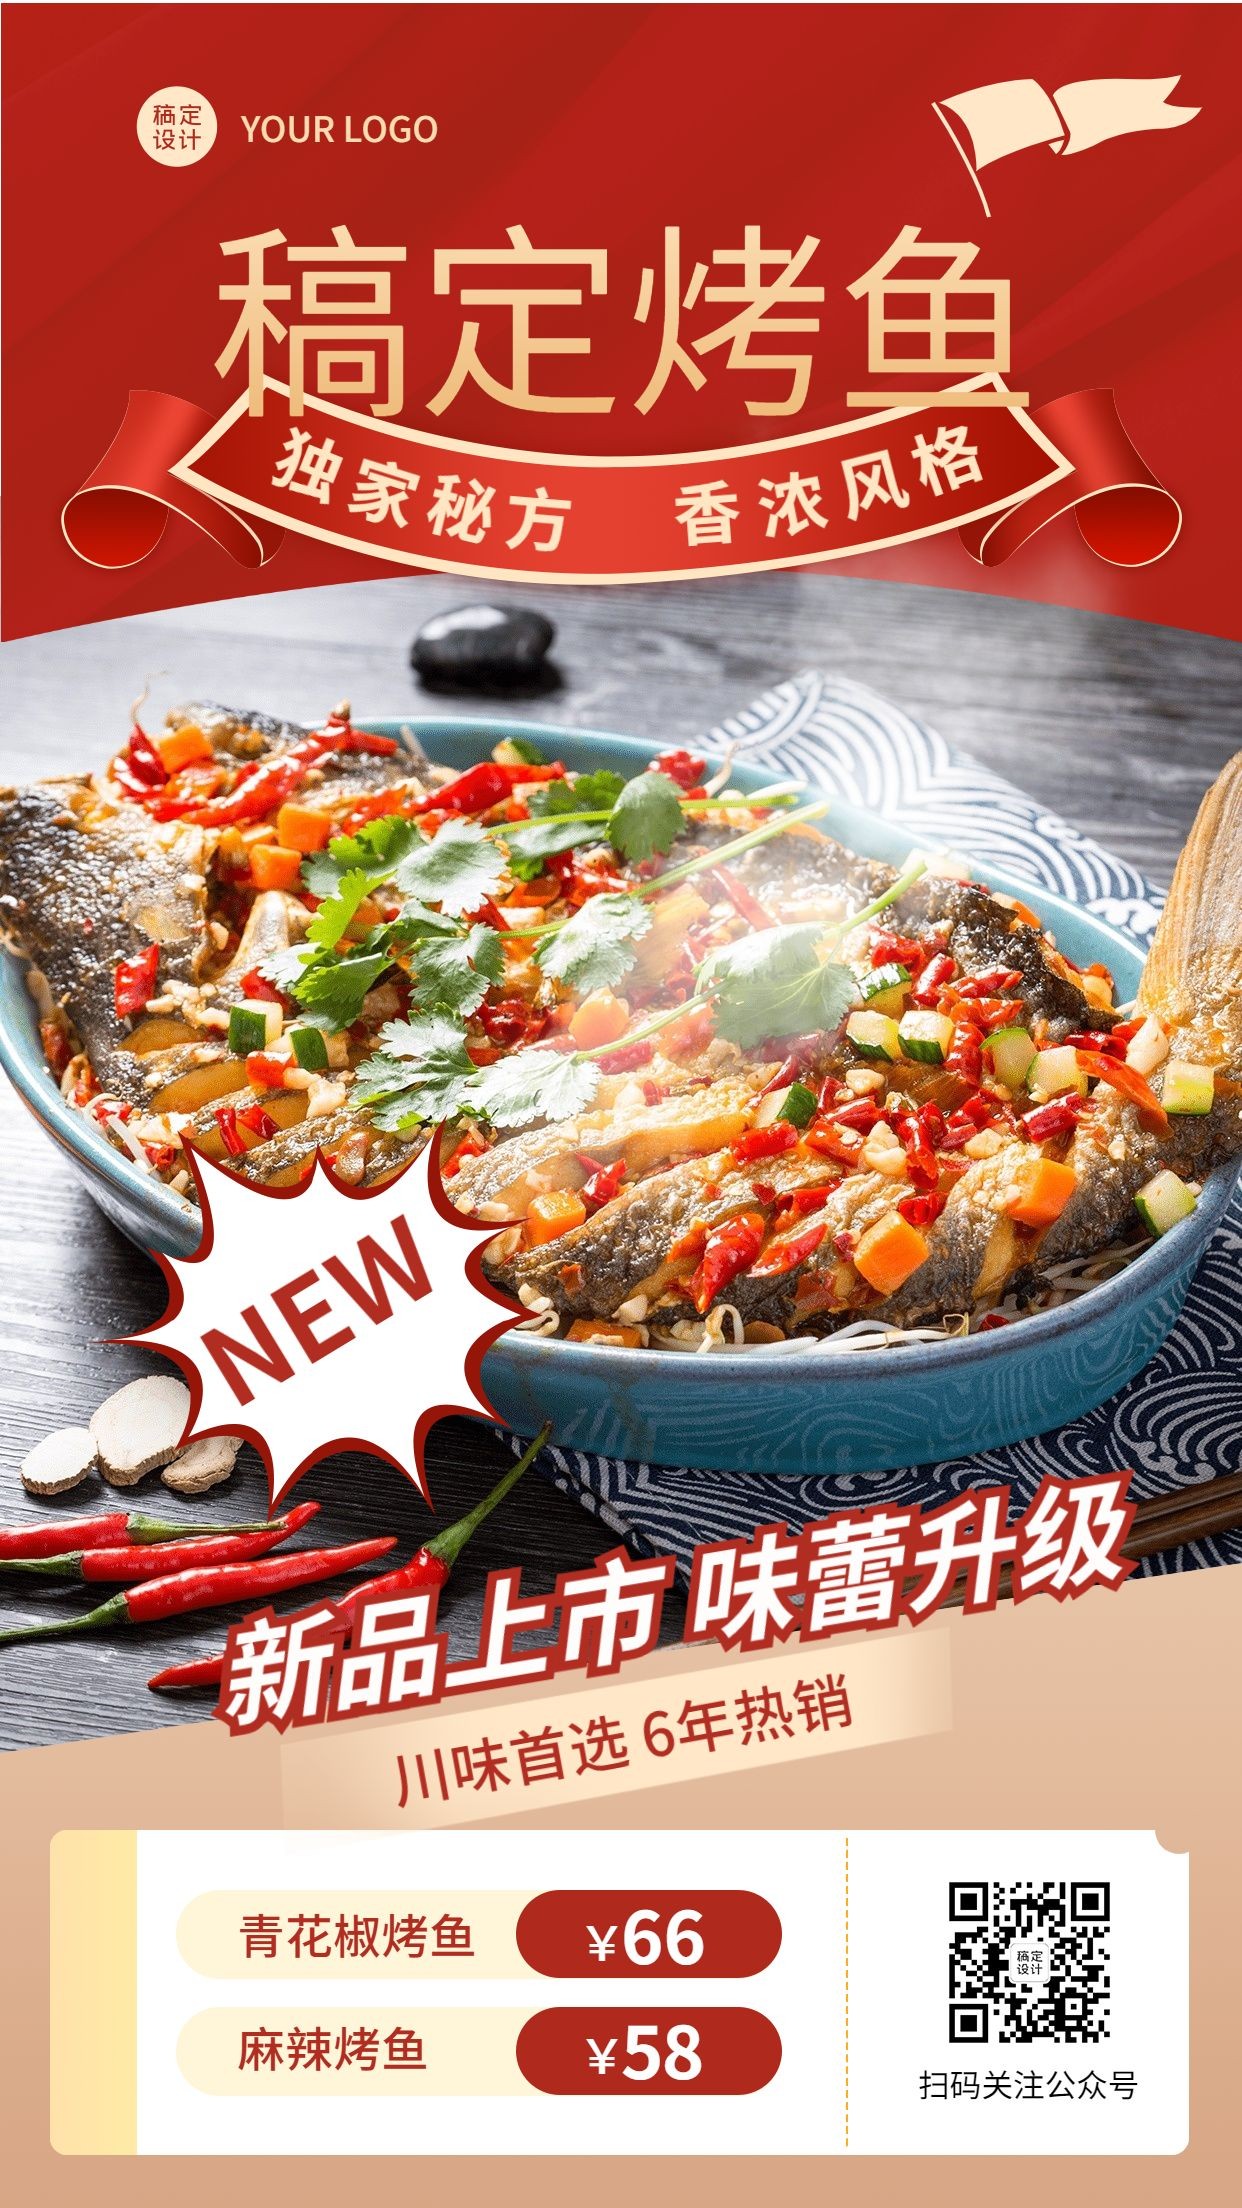 餐饮烤鱼新品上市产品营销手机海报预览效果